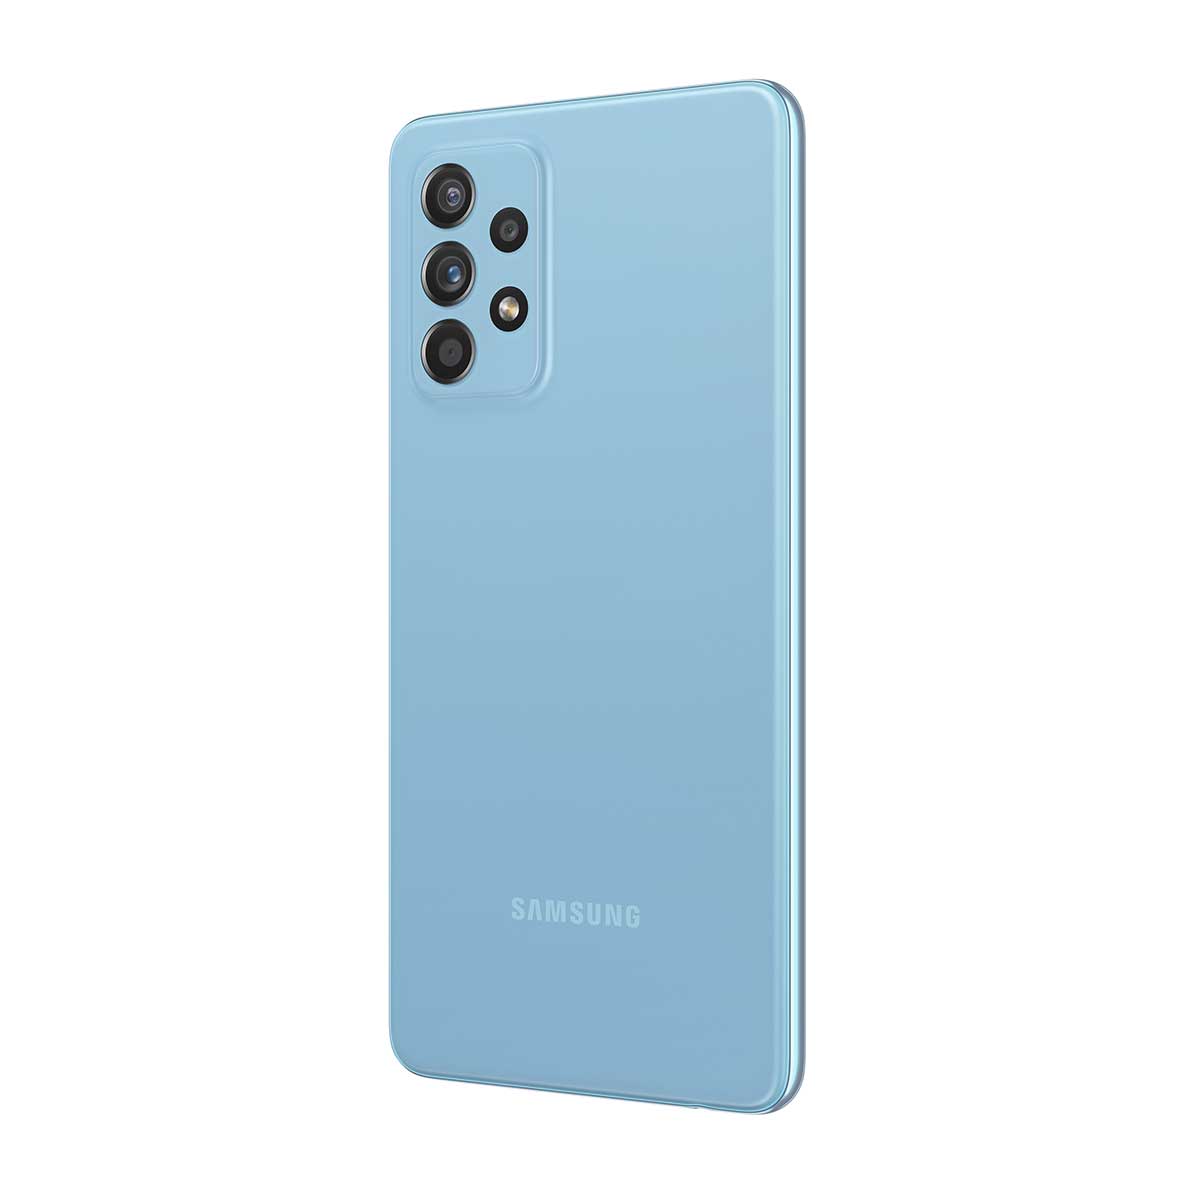 Smartphone Samsung A52 128GB Azul 4G Tela 6.5” Câmera Quádrupla 64MP Selfie 32MP Dual Chip Traseira Direito